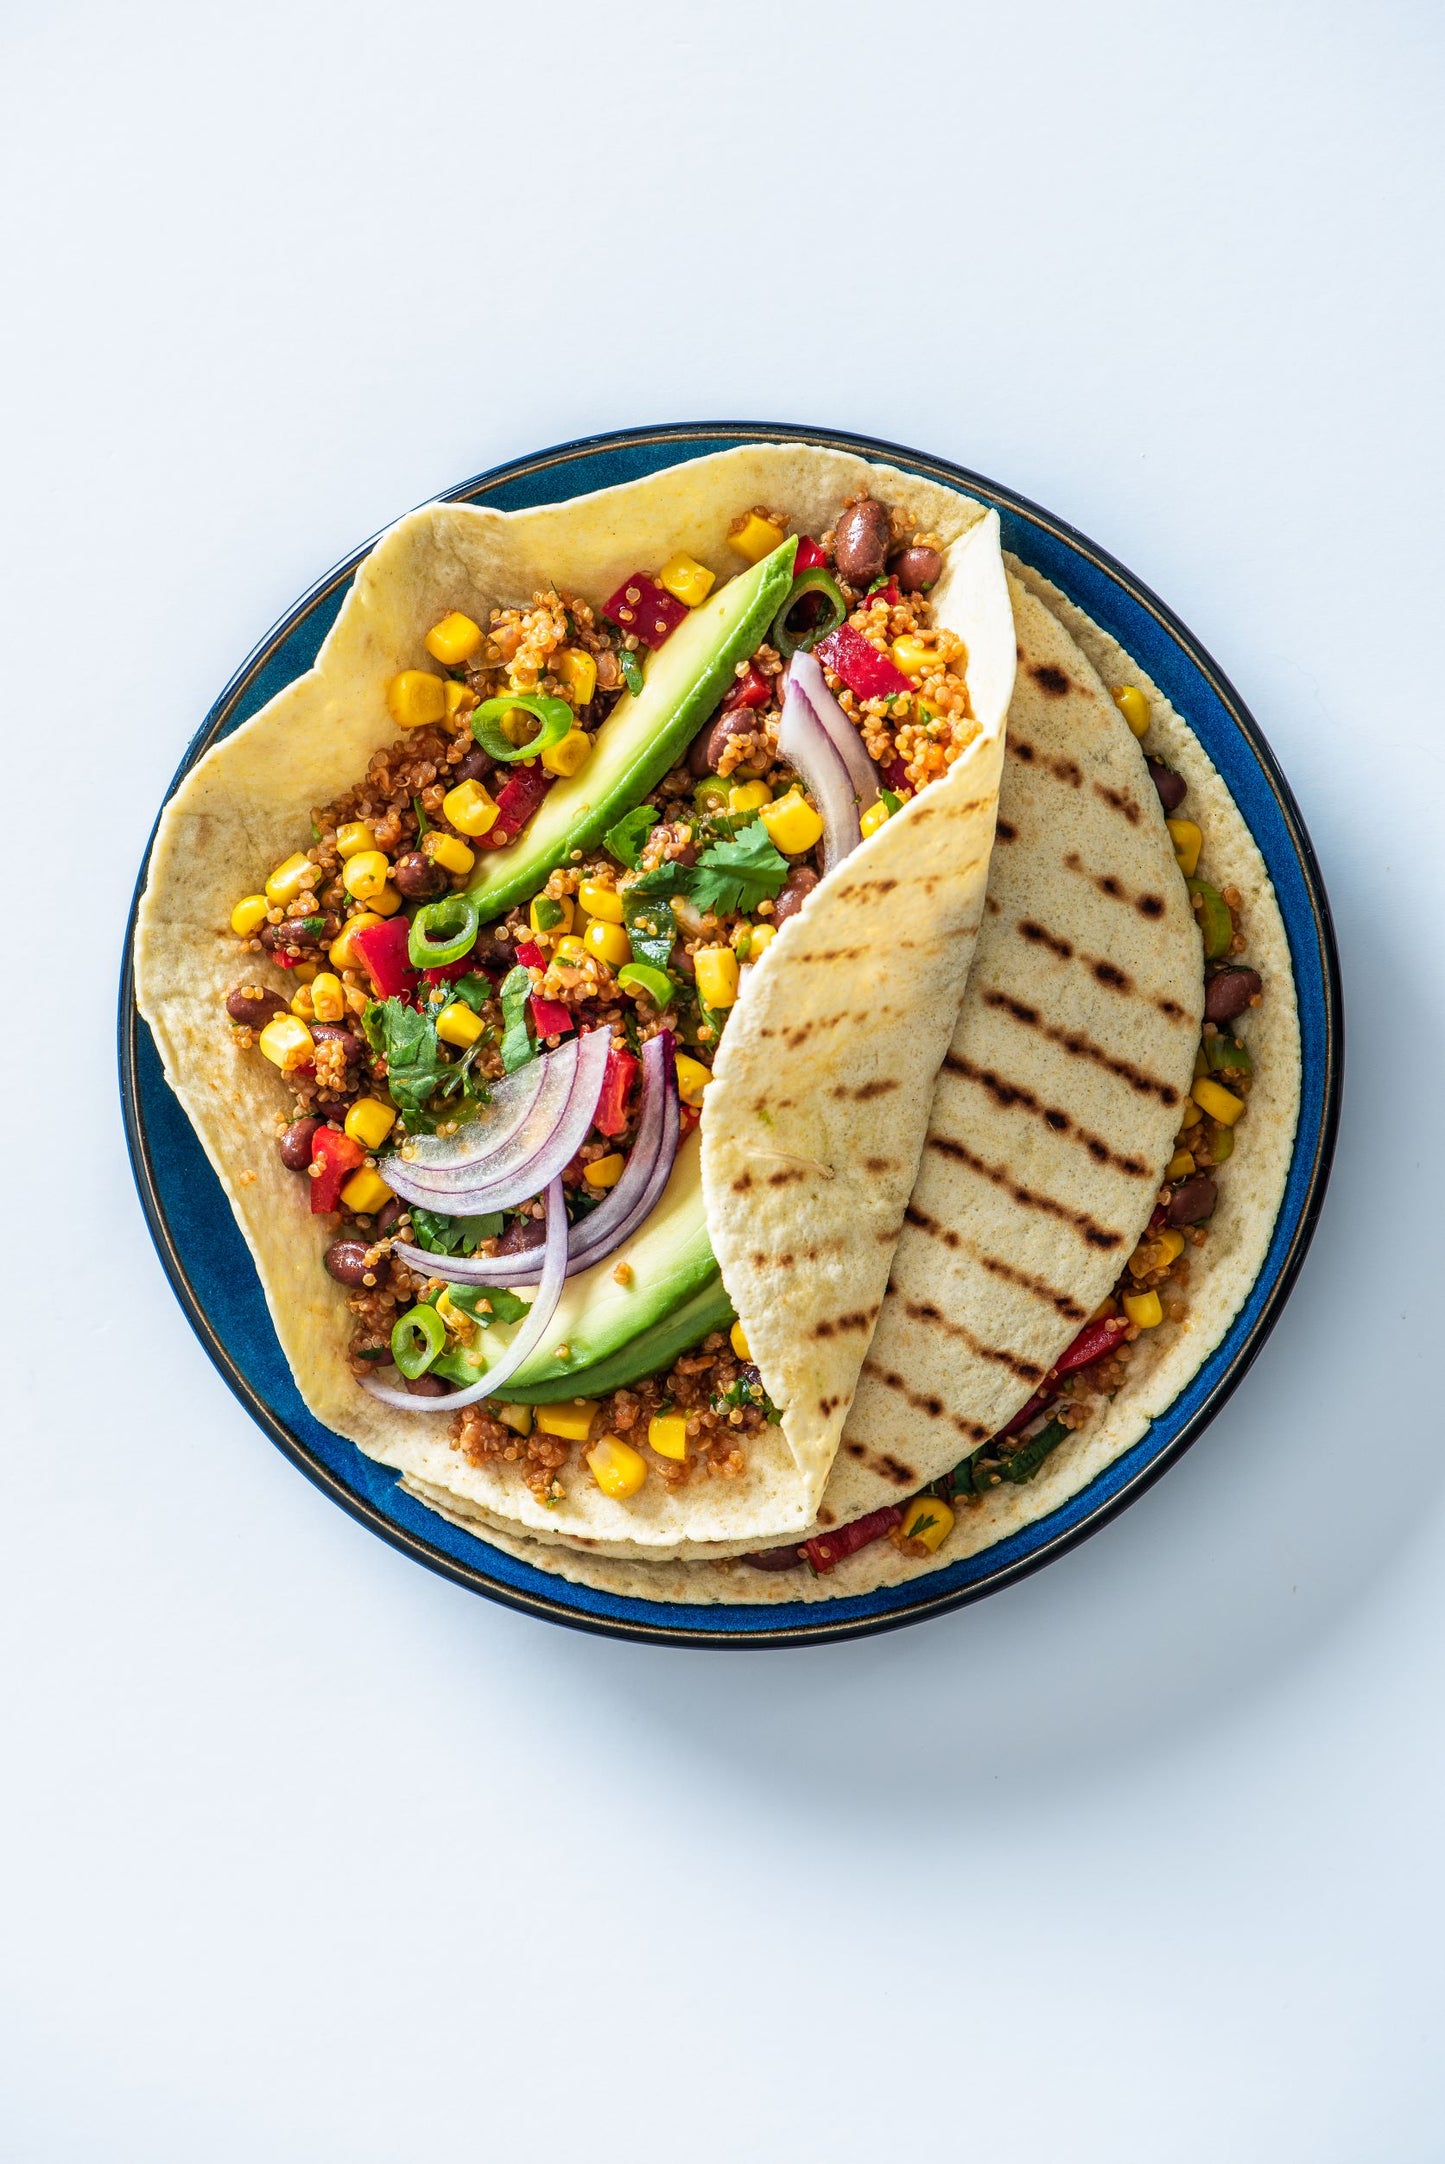 Plate of spicy mexican quinoa in burrito wraps